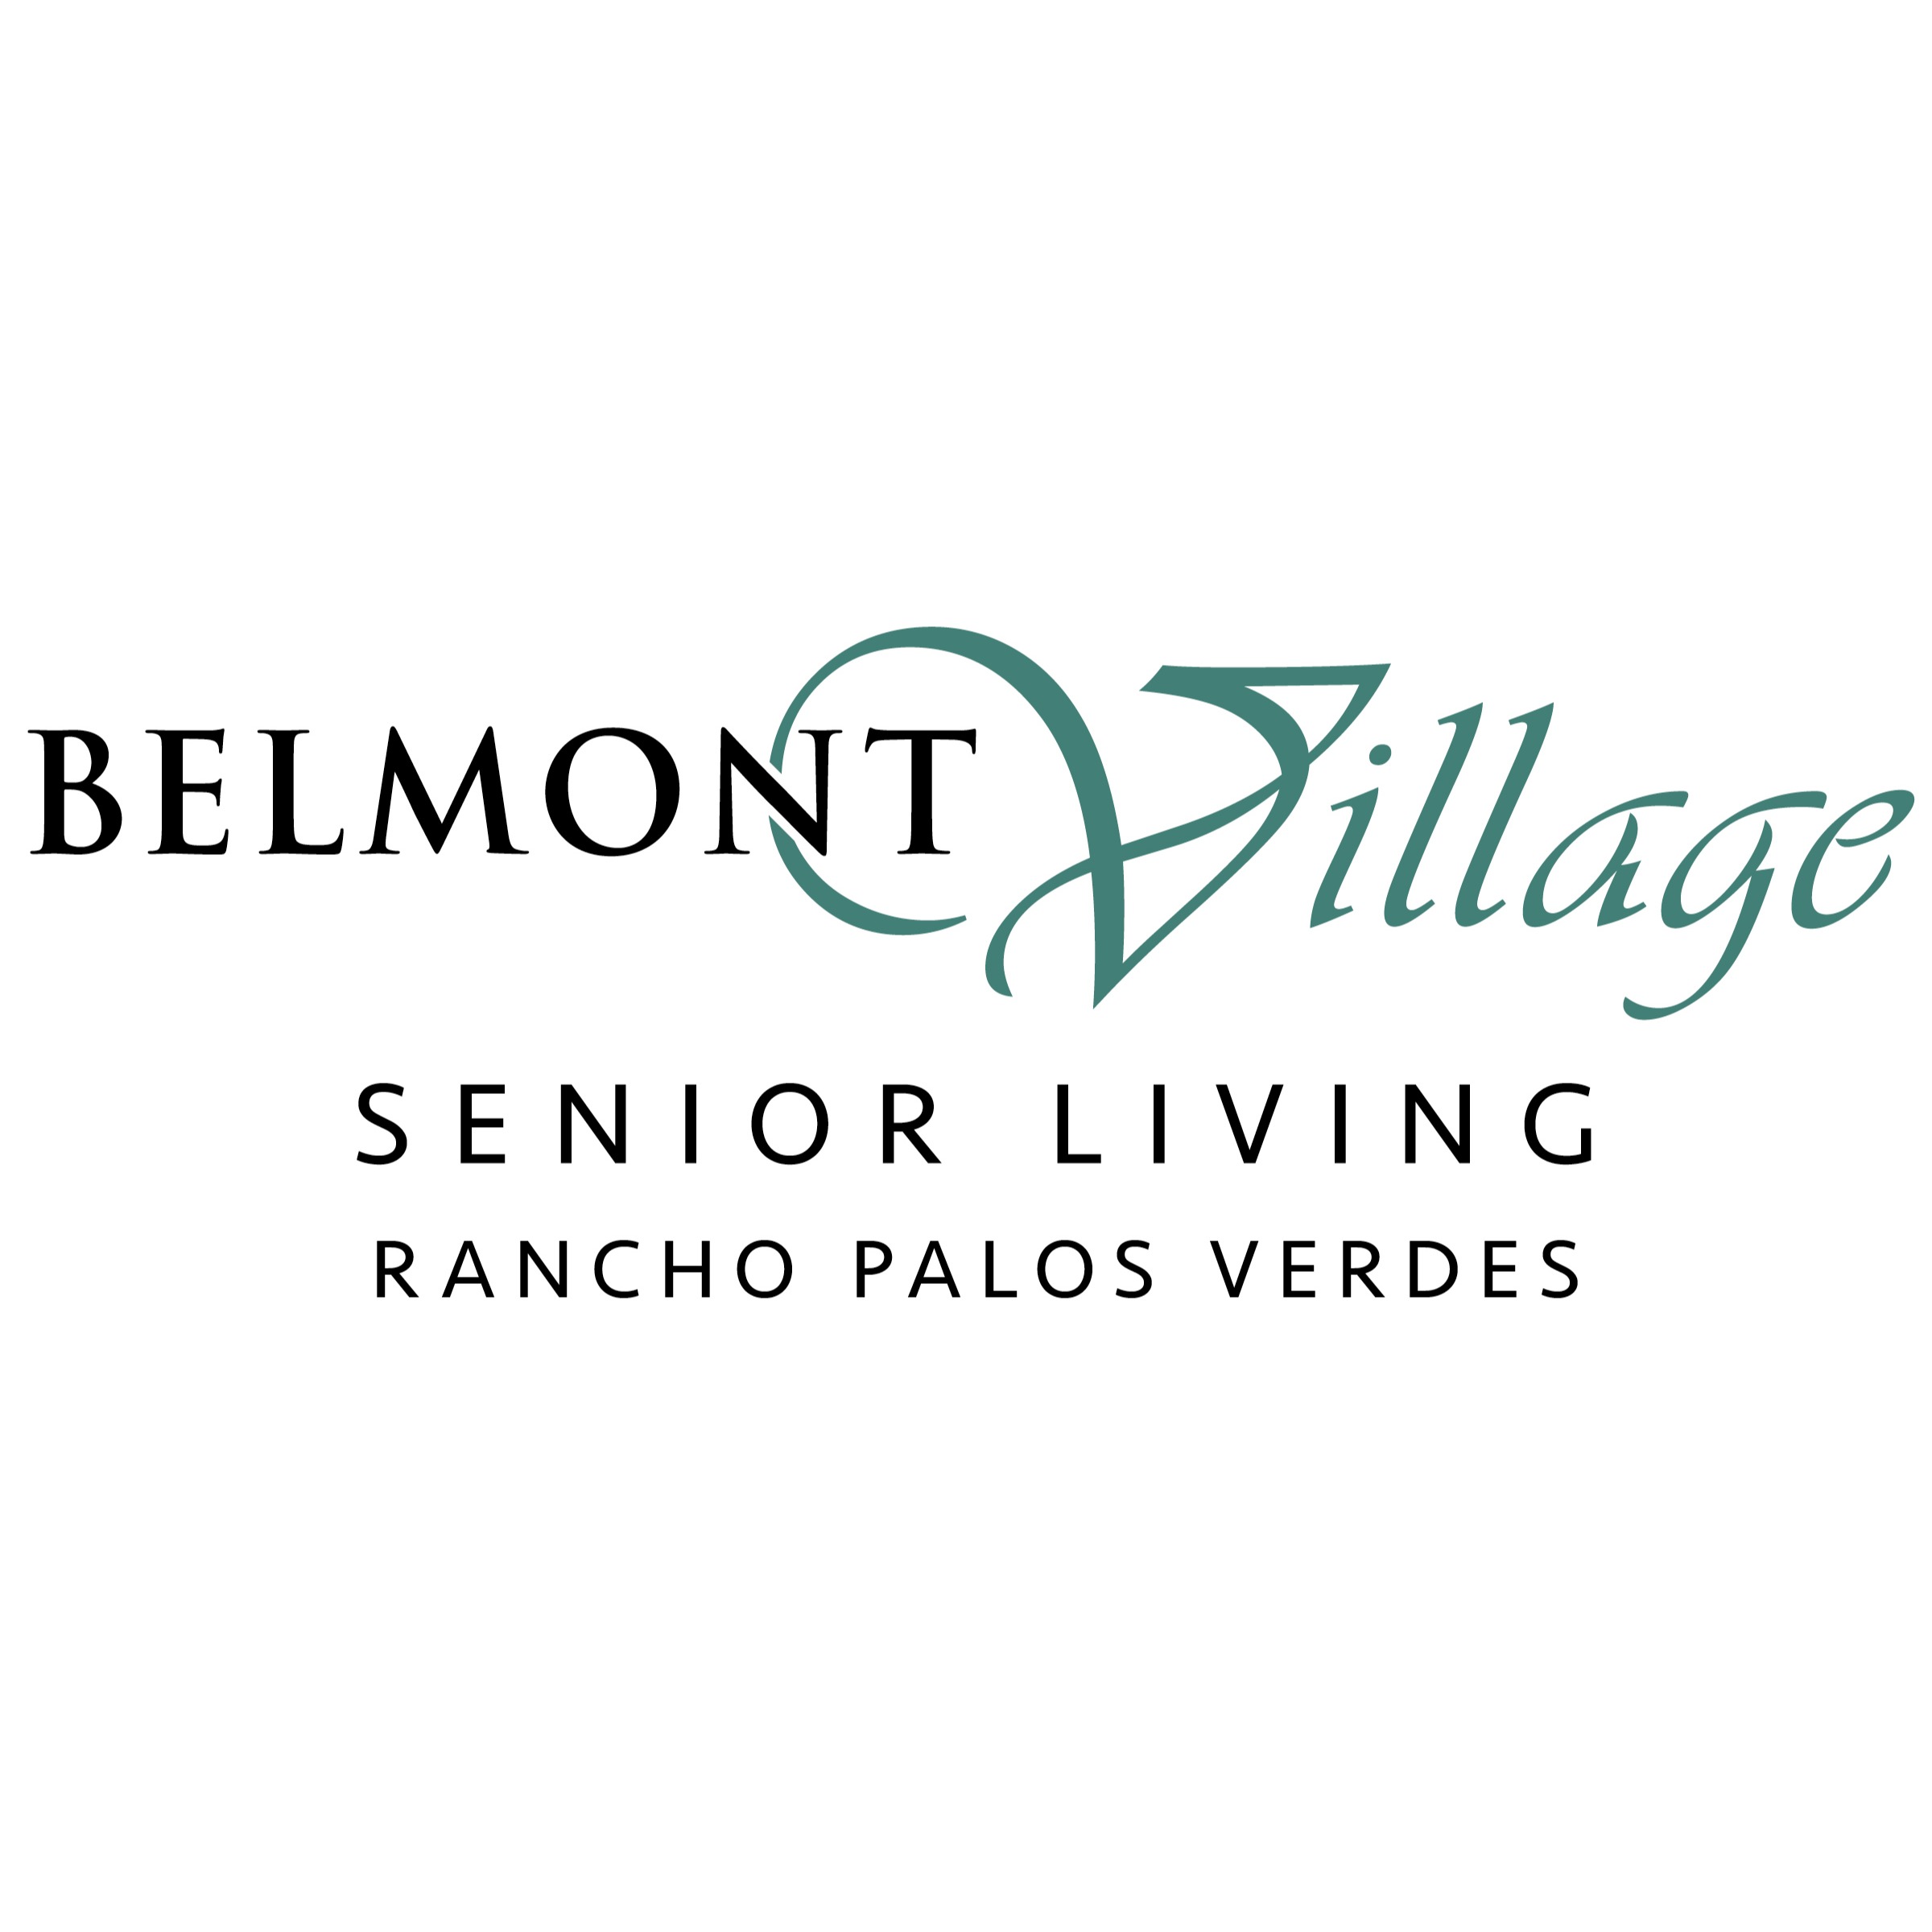 Belmont Village Senior Living Rancho Palos Verdes